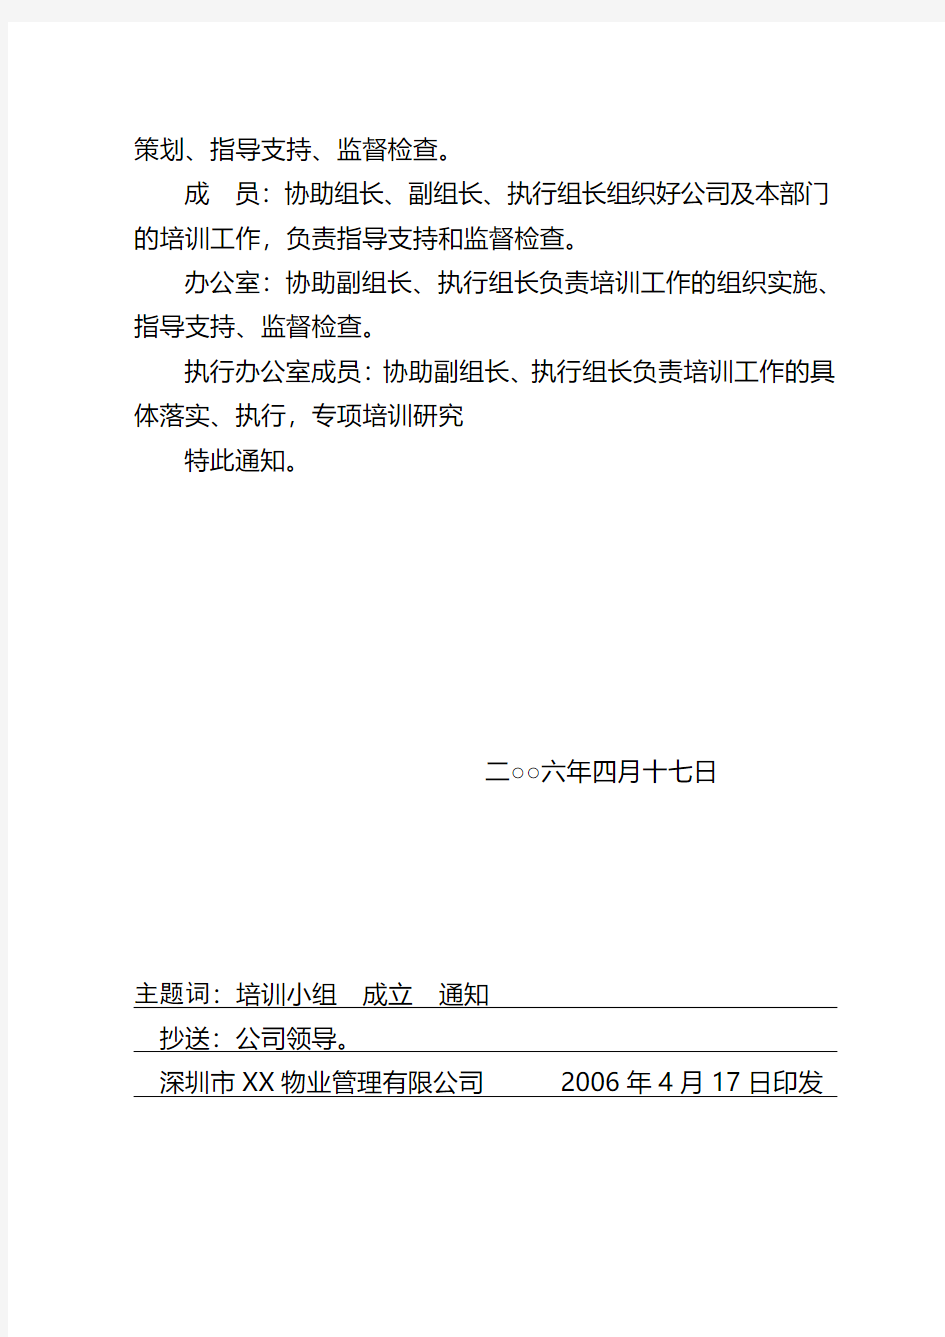 深圳金地物业公司文件-关于成立公司培训工作领导小组的通知